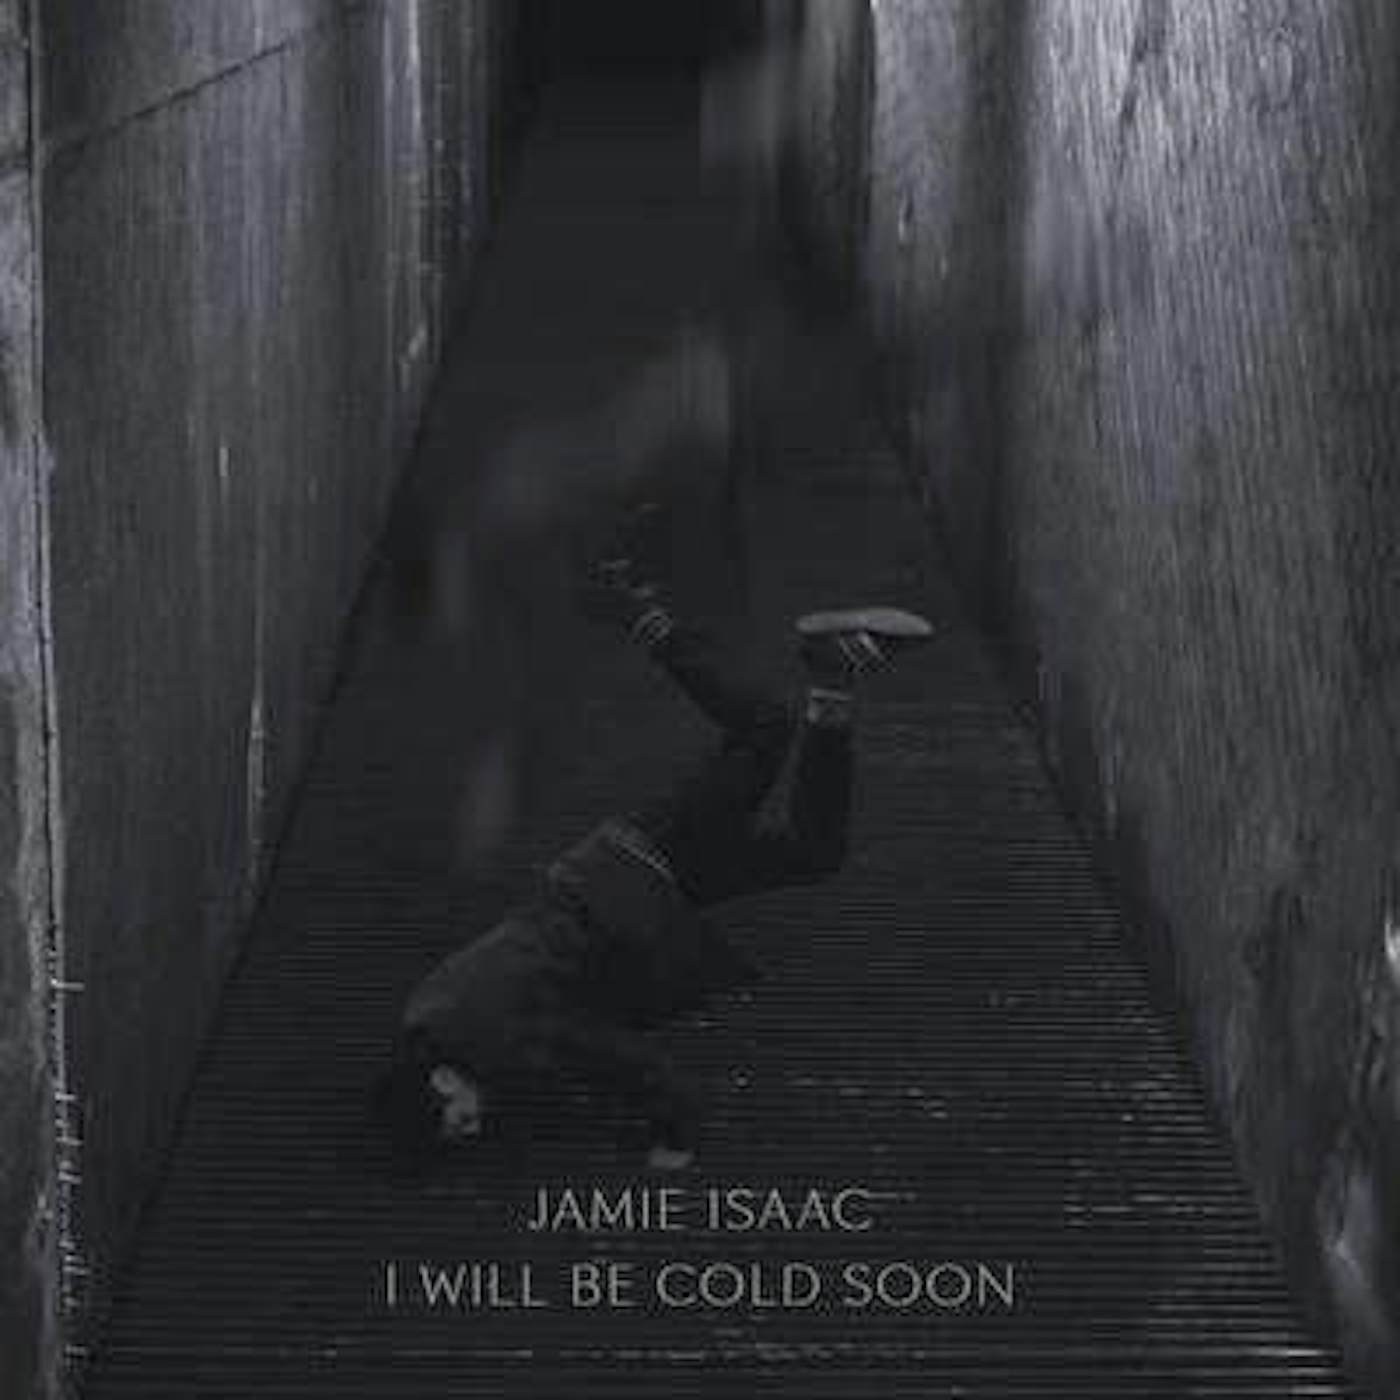 Jamie Isaac I WILL BE COLD SOON (UK) (Vinyl)